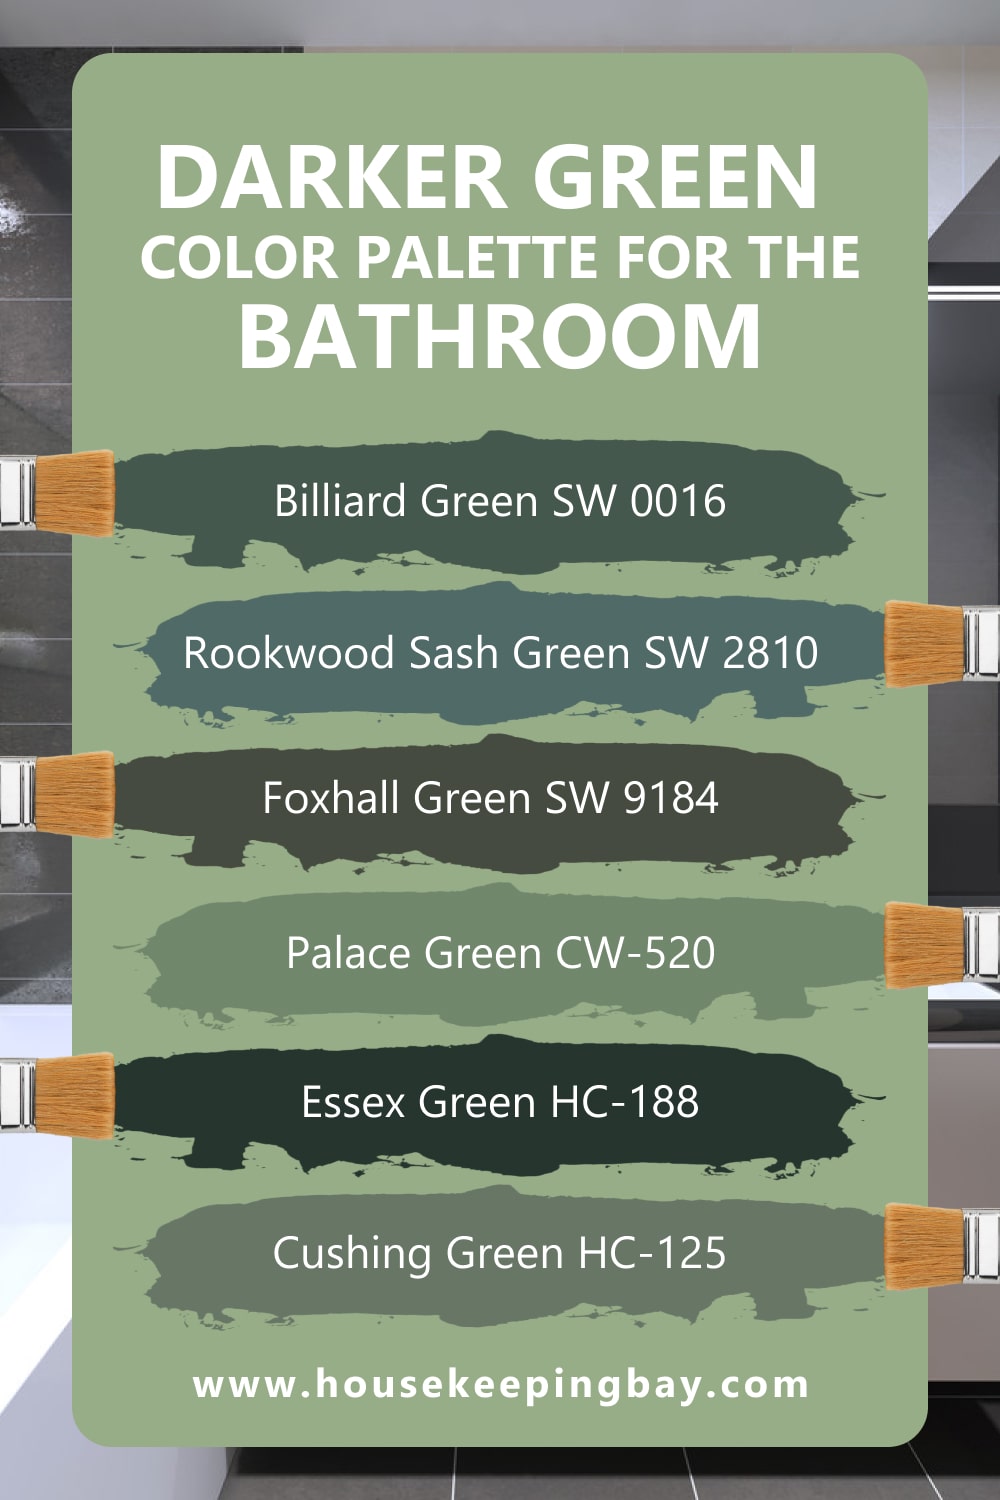 Darker Green Color Palette for the Bathroom